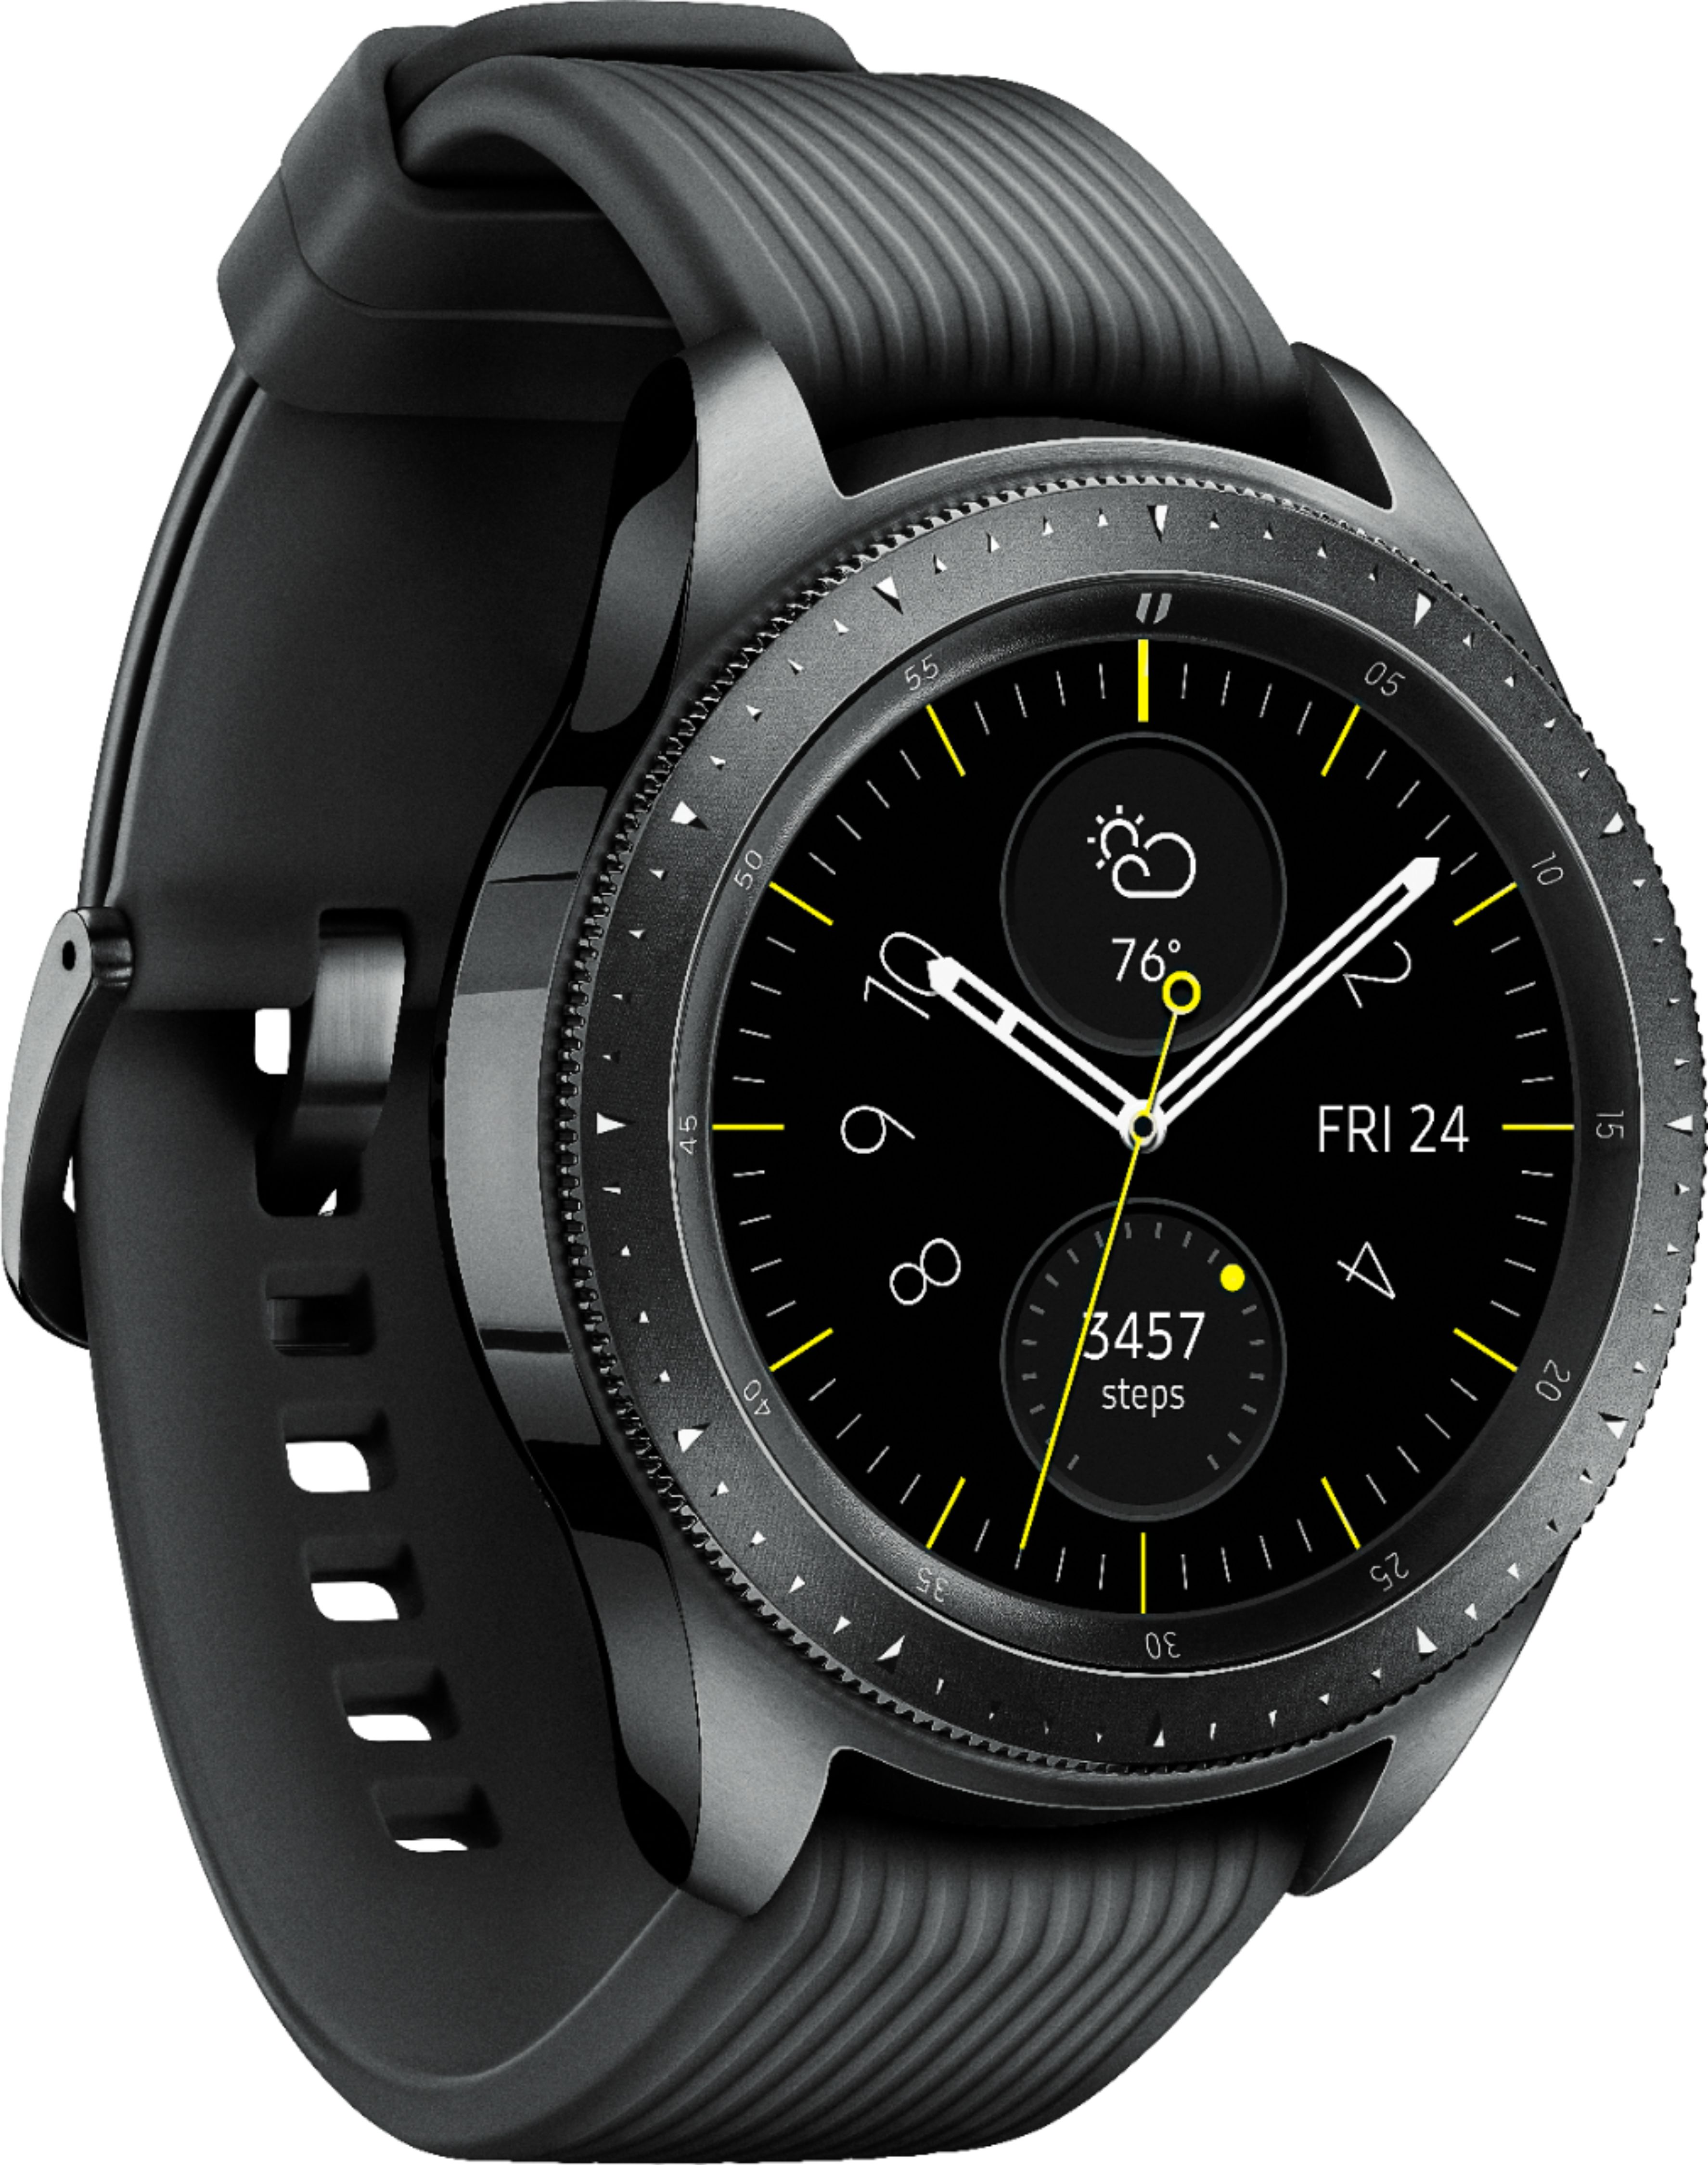 Best Buy: Samsung Galaxy Watch Smartwatch 42mm Stainless Steel ...